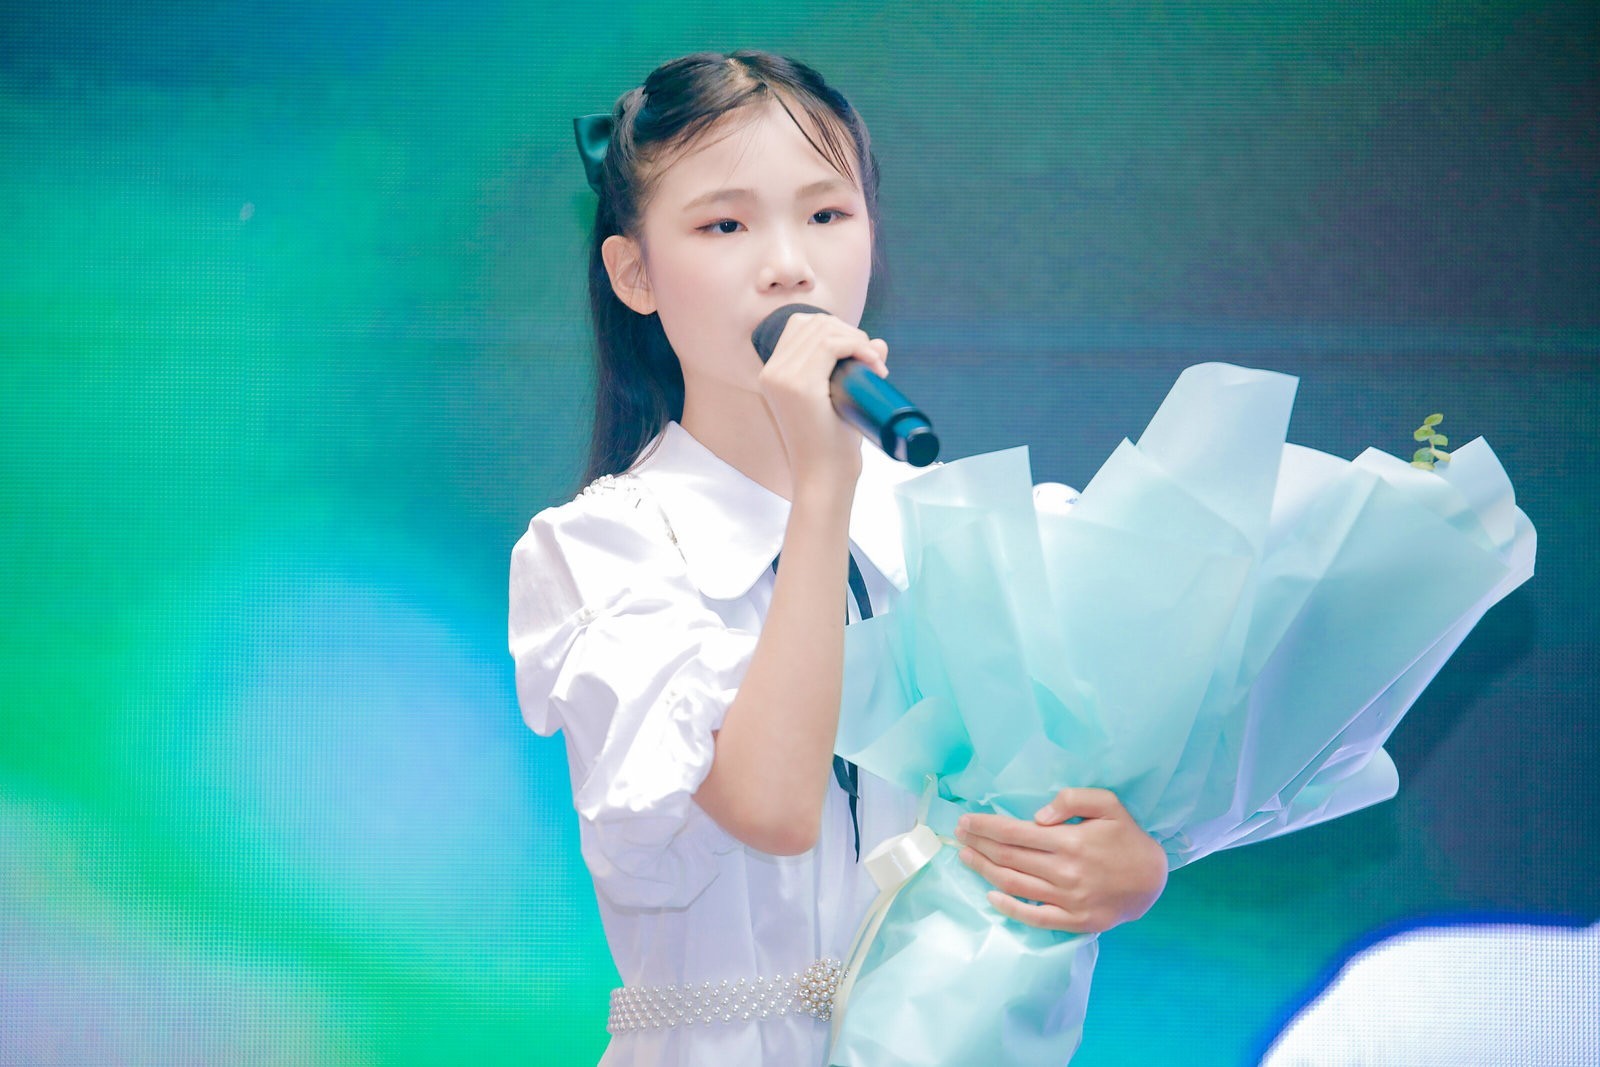 12岁广州女孩赵孜菡出专辑歌唱白衣战士